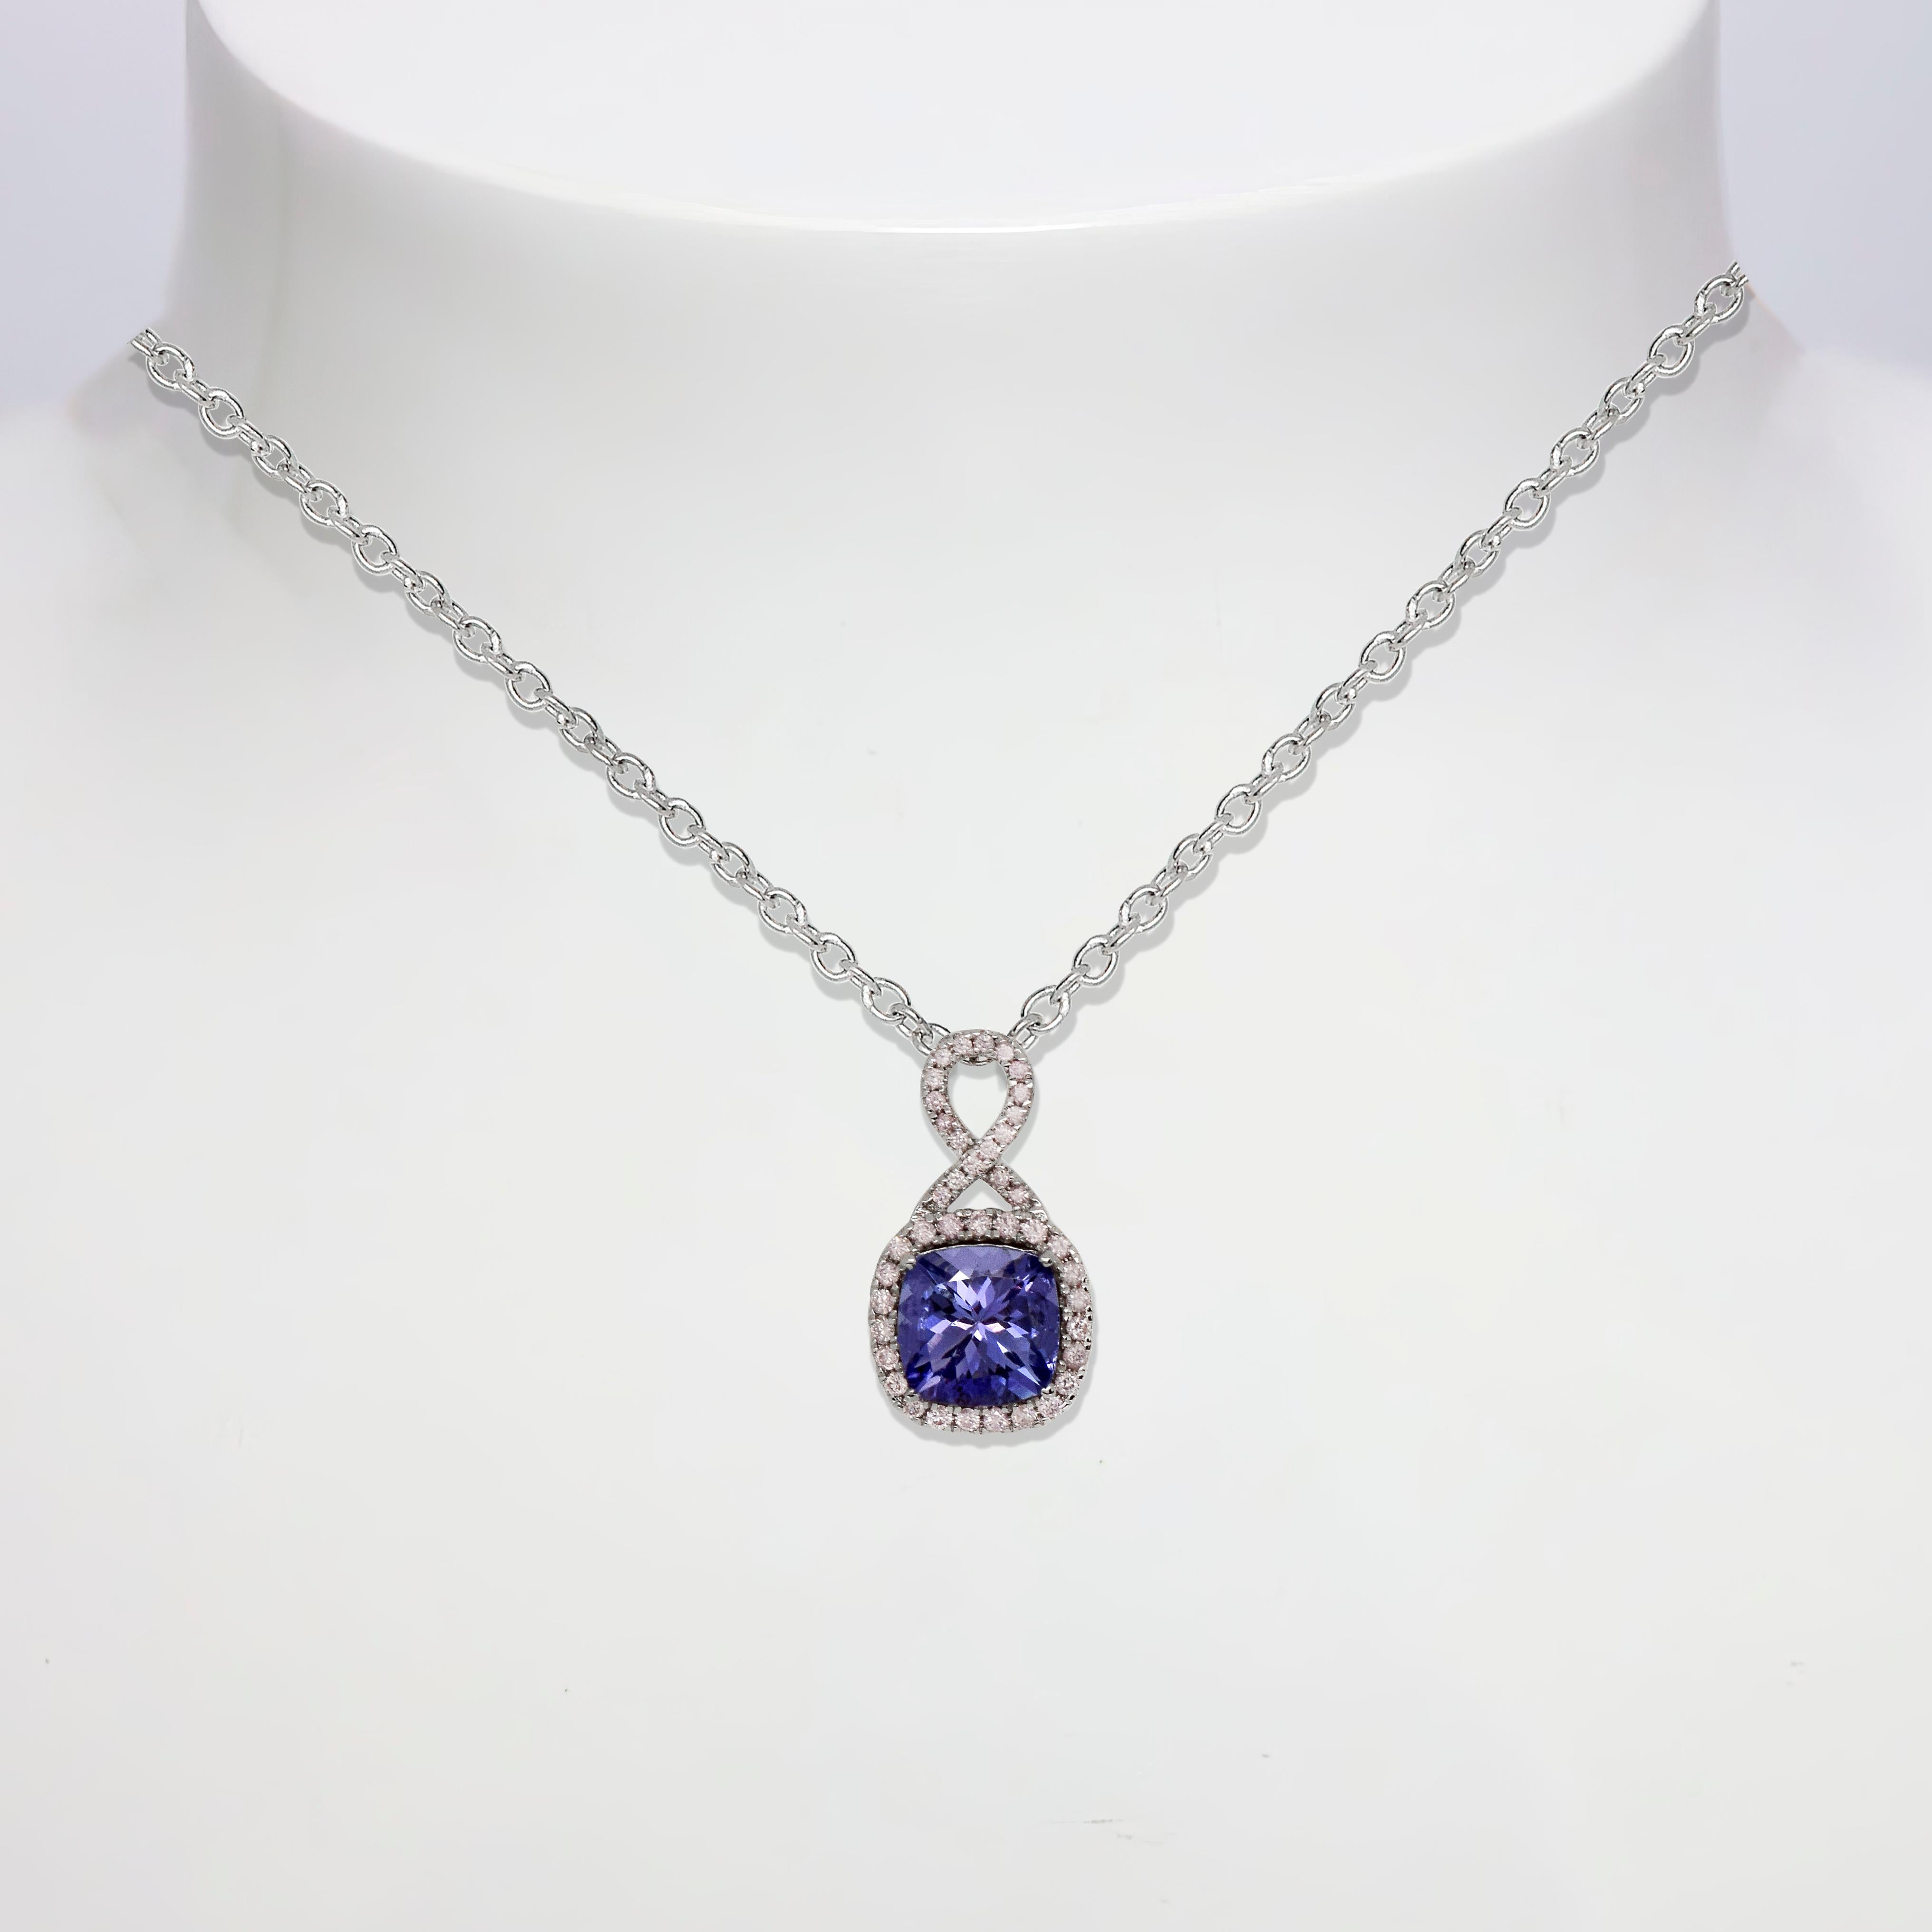 *IGI 14K 2.08 ct Tanzanite&Pink Diamond Antique Pendant Necklace*
Der natürliche bläulich-violette Tansanit mit einem Gewicht von 2,08 ct ist der Mittelstein, umgeben von natürlichen rosafarbenen Diamanten mit einem Gewicht von 0,45 ct auf dem